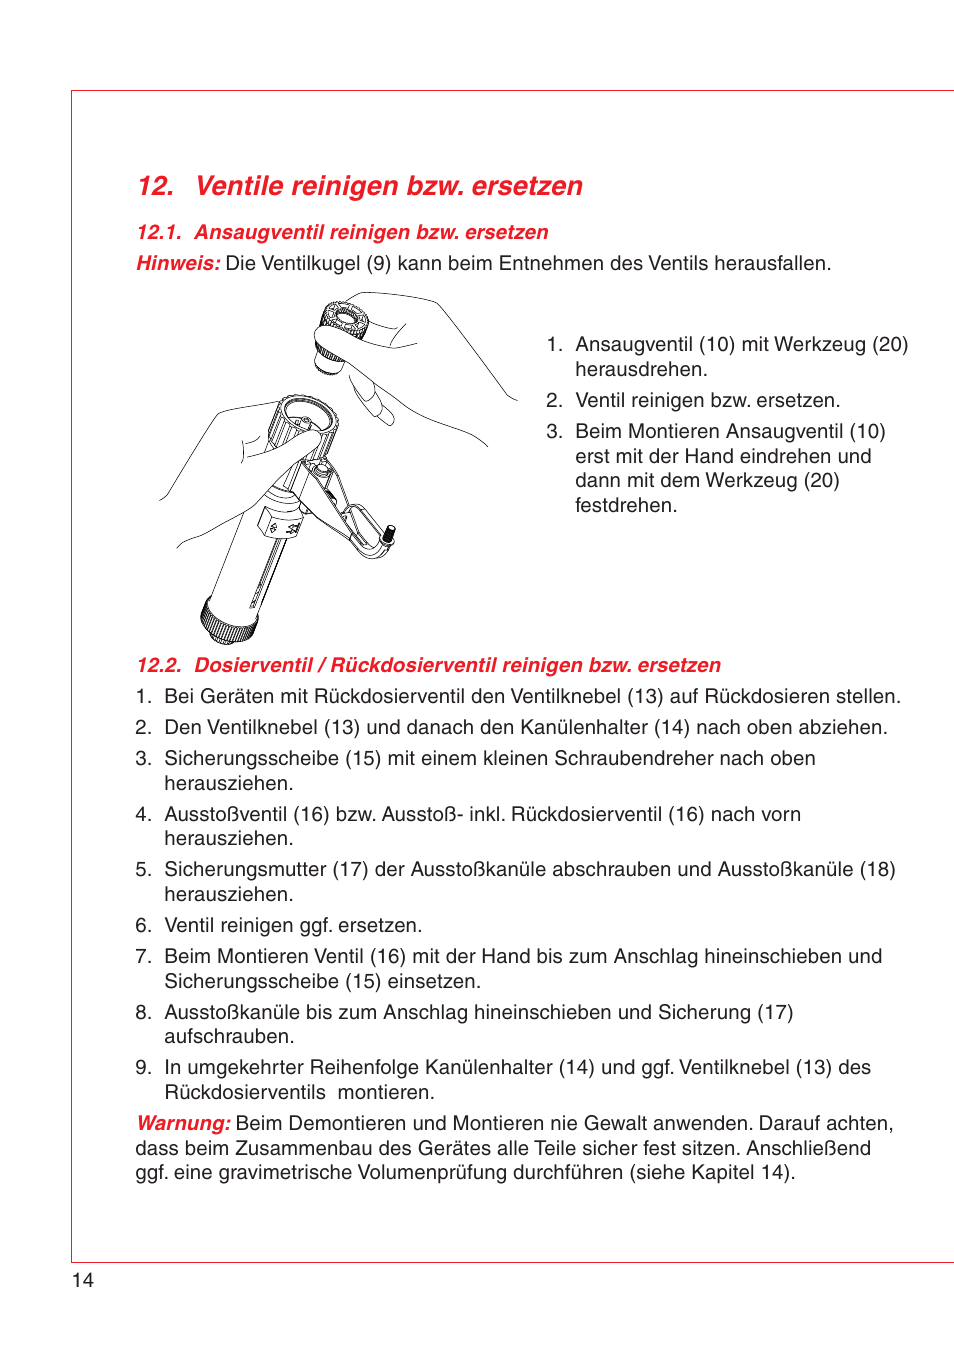 Ventile reinigen bzw. ersetzen | Eppendorf Varispenser 4962 User Manual | Page 20 / 110